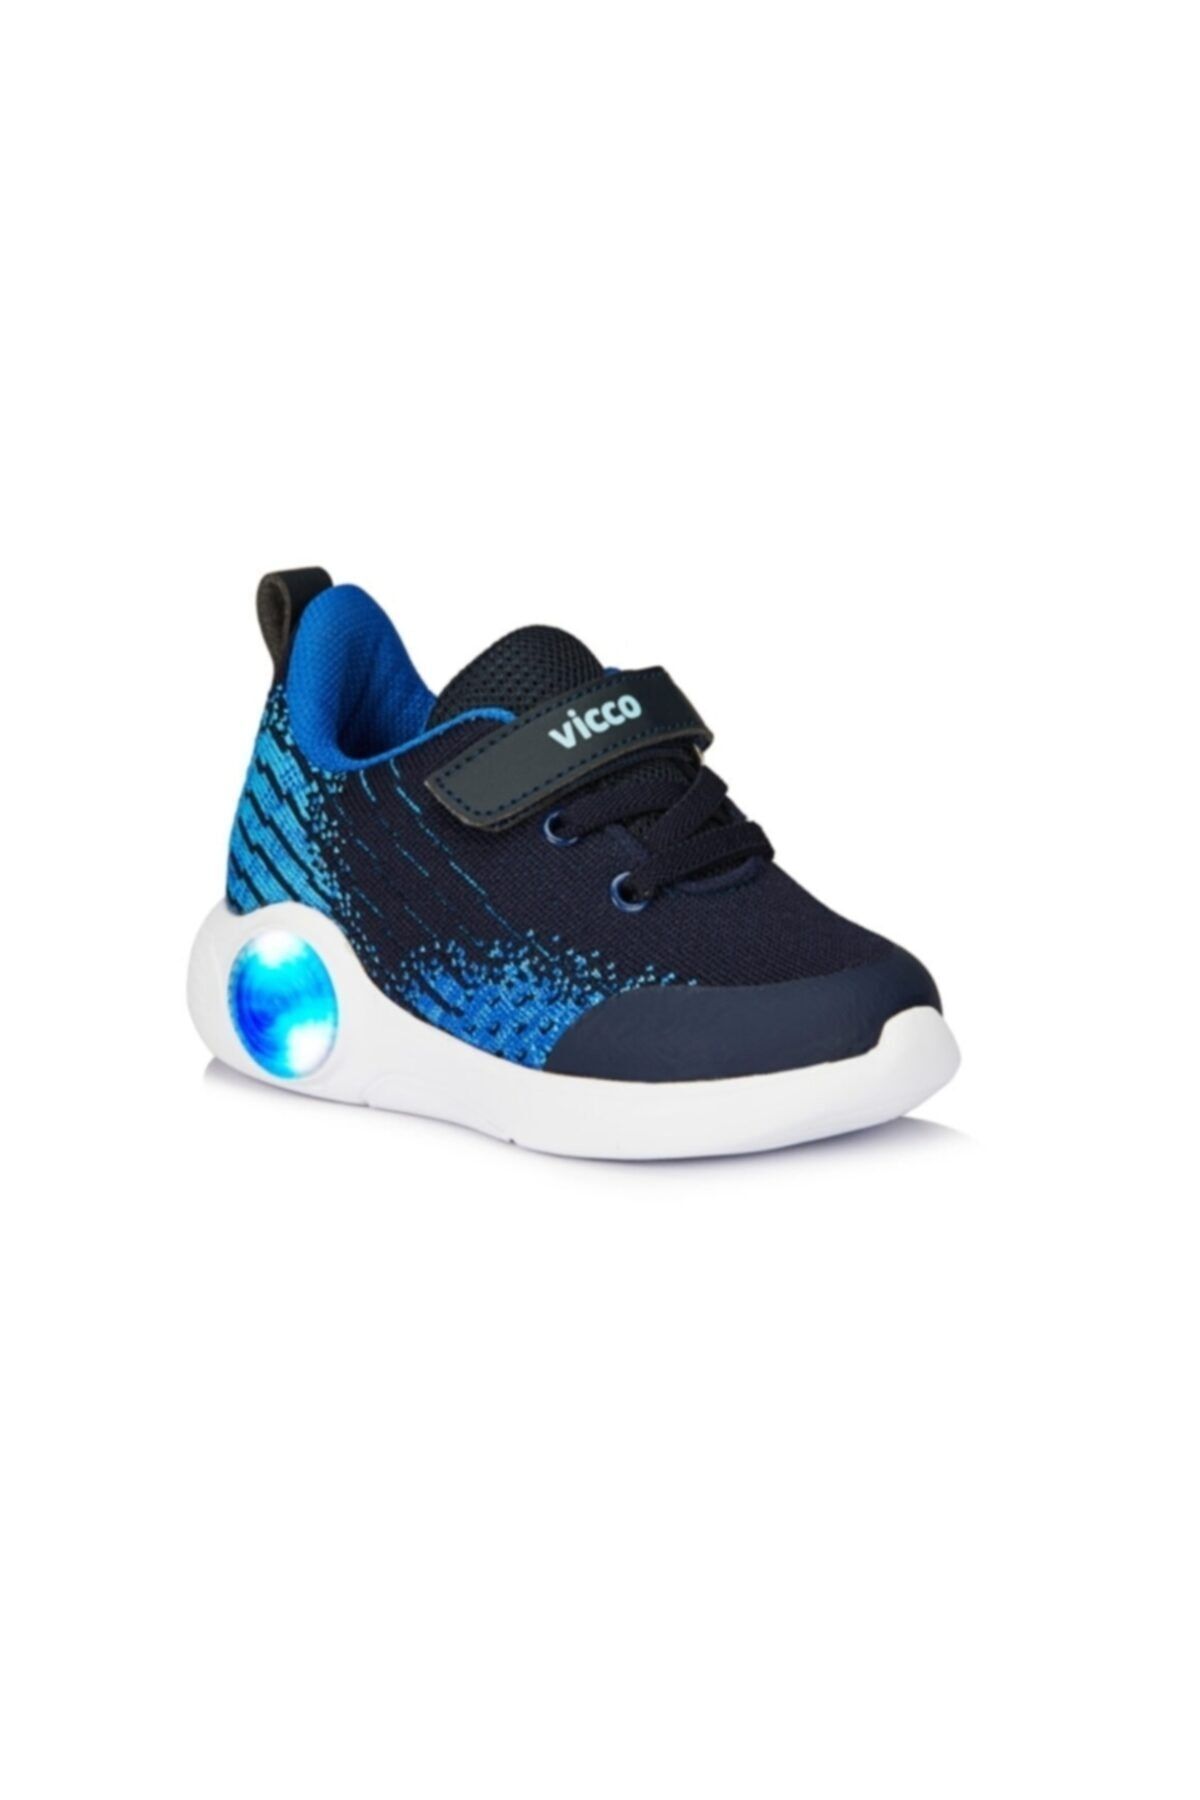 Vicco Neo Lacivert Erkek Çocuk Işıklı Phylon Spor Ayakkabı